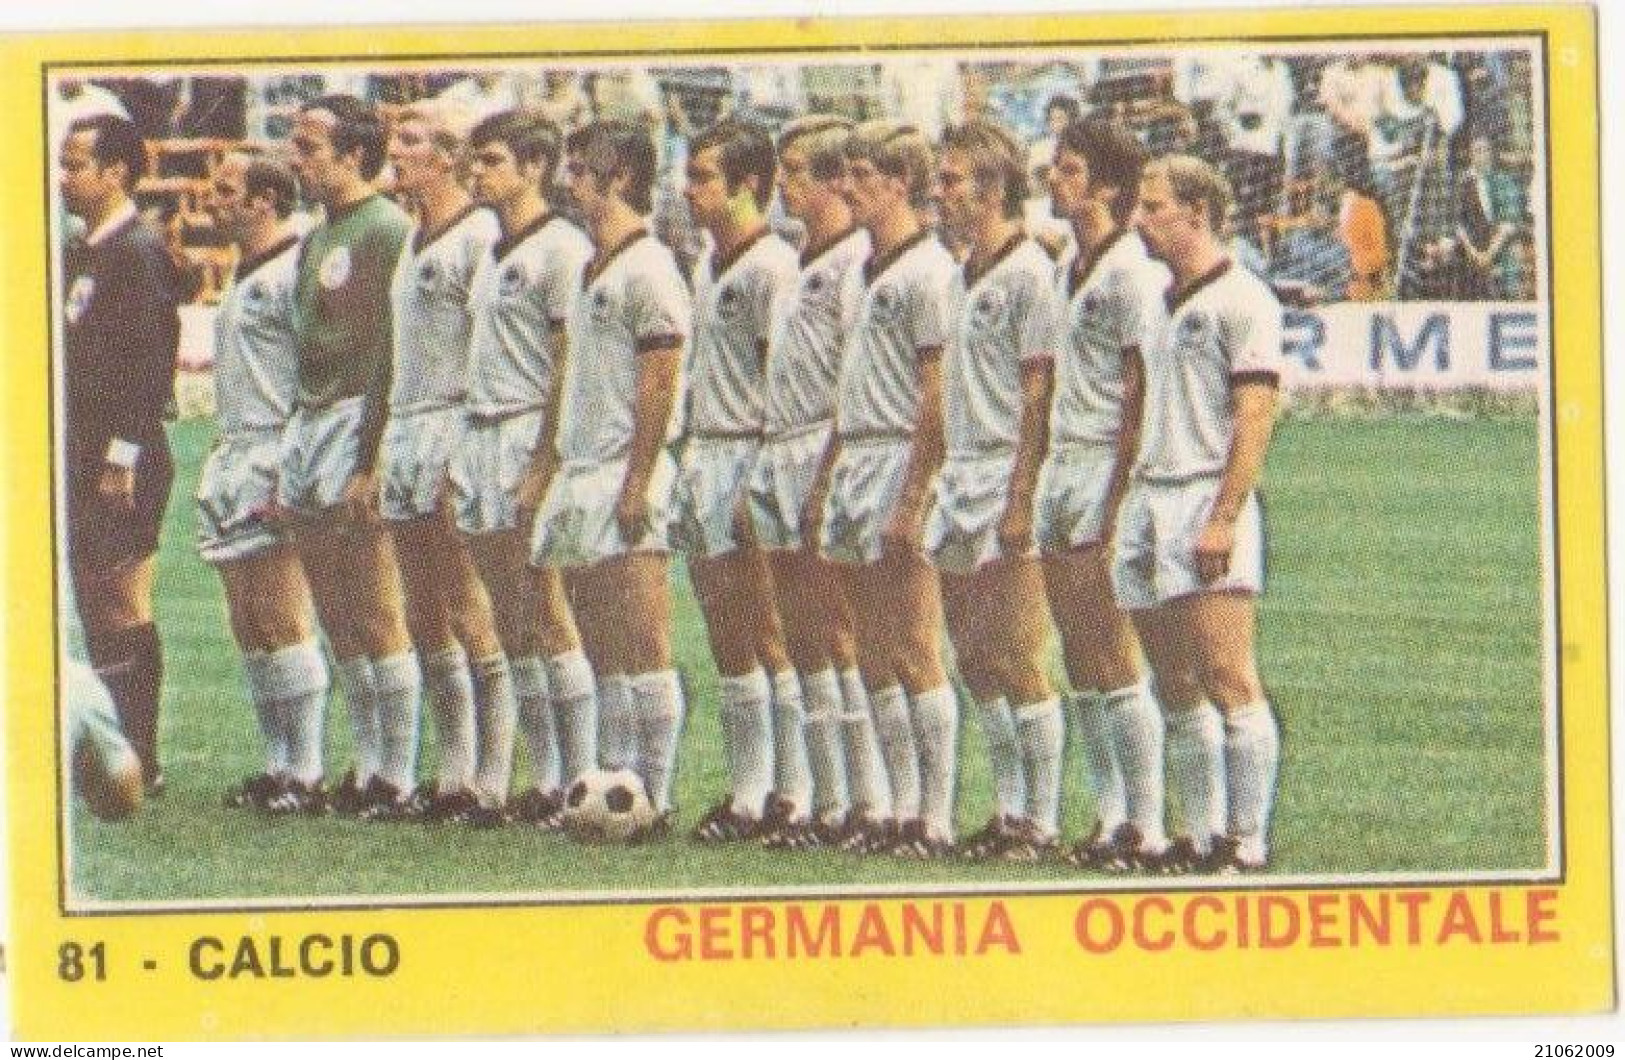 81 NAZIONALE GERMANIA OCCIDENTALE CALCIO FOOTBALL SOCCER MEXICO '70 - CAMPIONI DELLO SPORT PANINI 1970-71 - Trading Cards